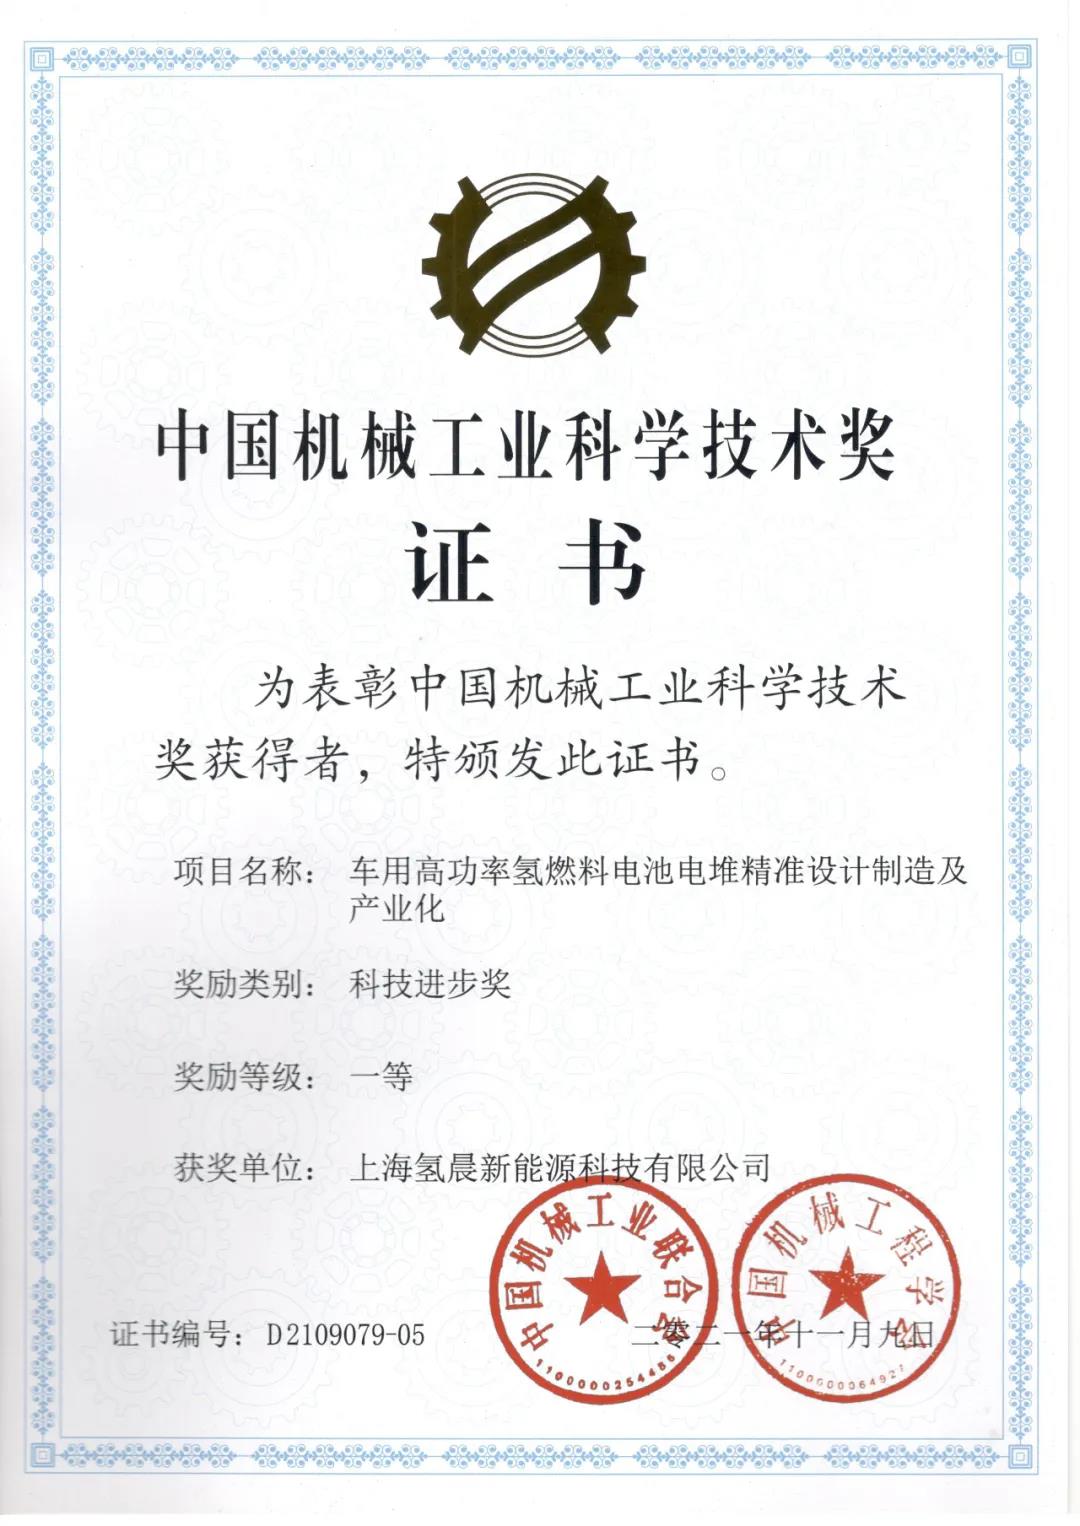 氢晨科技荣获“中国机械工业科学技术进步一等奖”